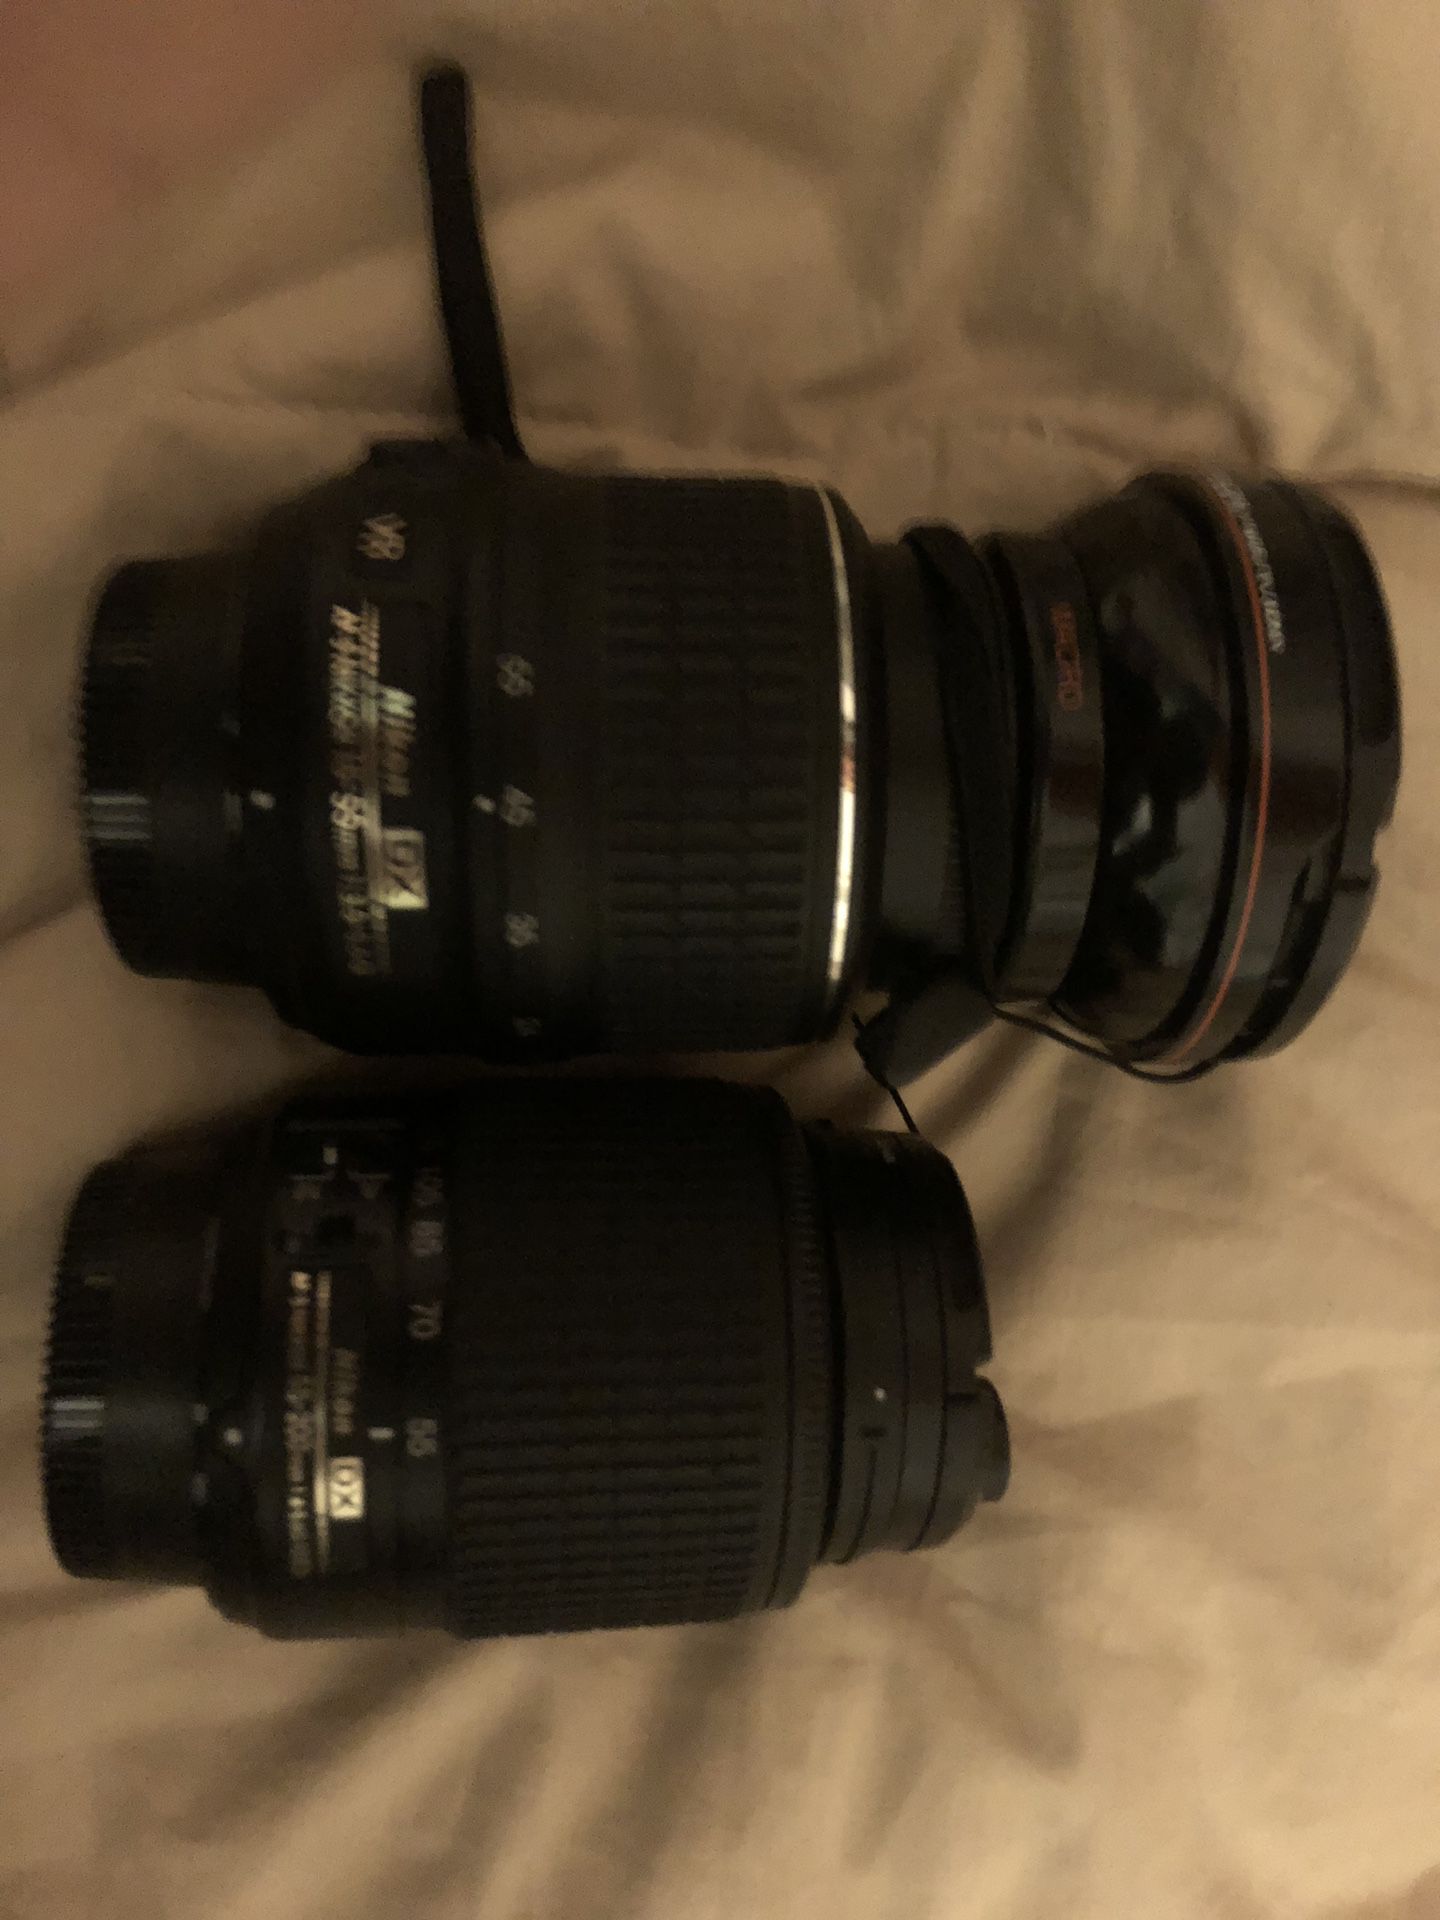 Nikon af-s nikkor 18-55mm 1 3.5-5.6g ii Nikon AF-P DX Nikkor Zoom Lens for Nikon F - 18mm-55mm - F/3.5-5.6 Macro lens